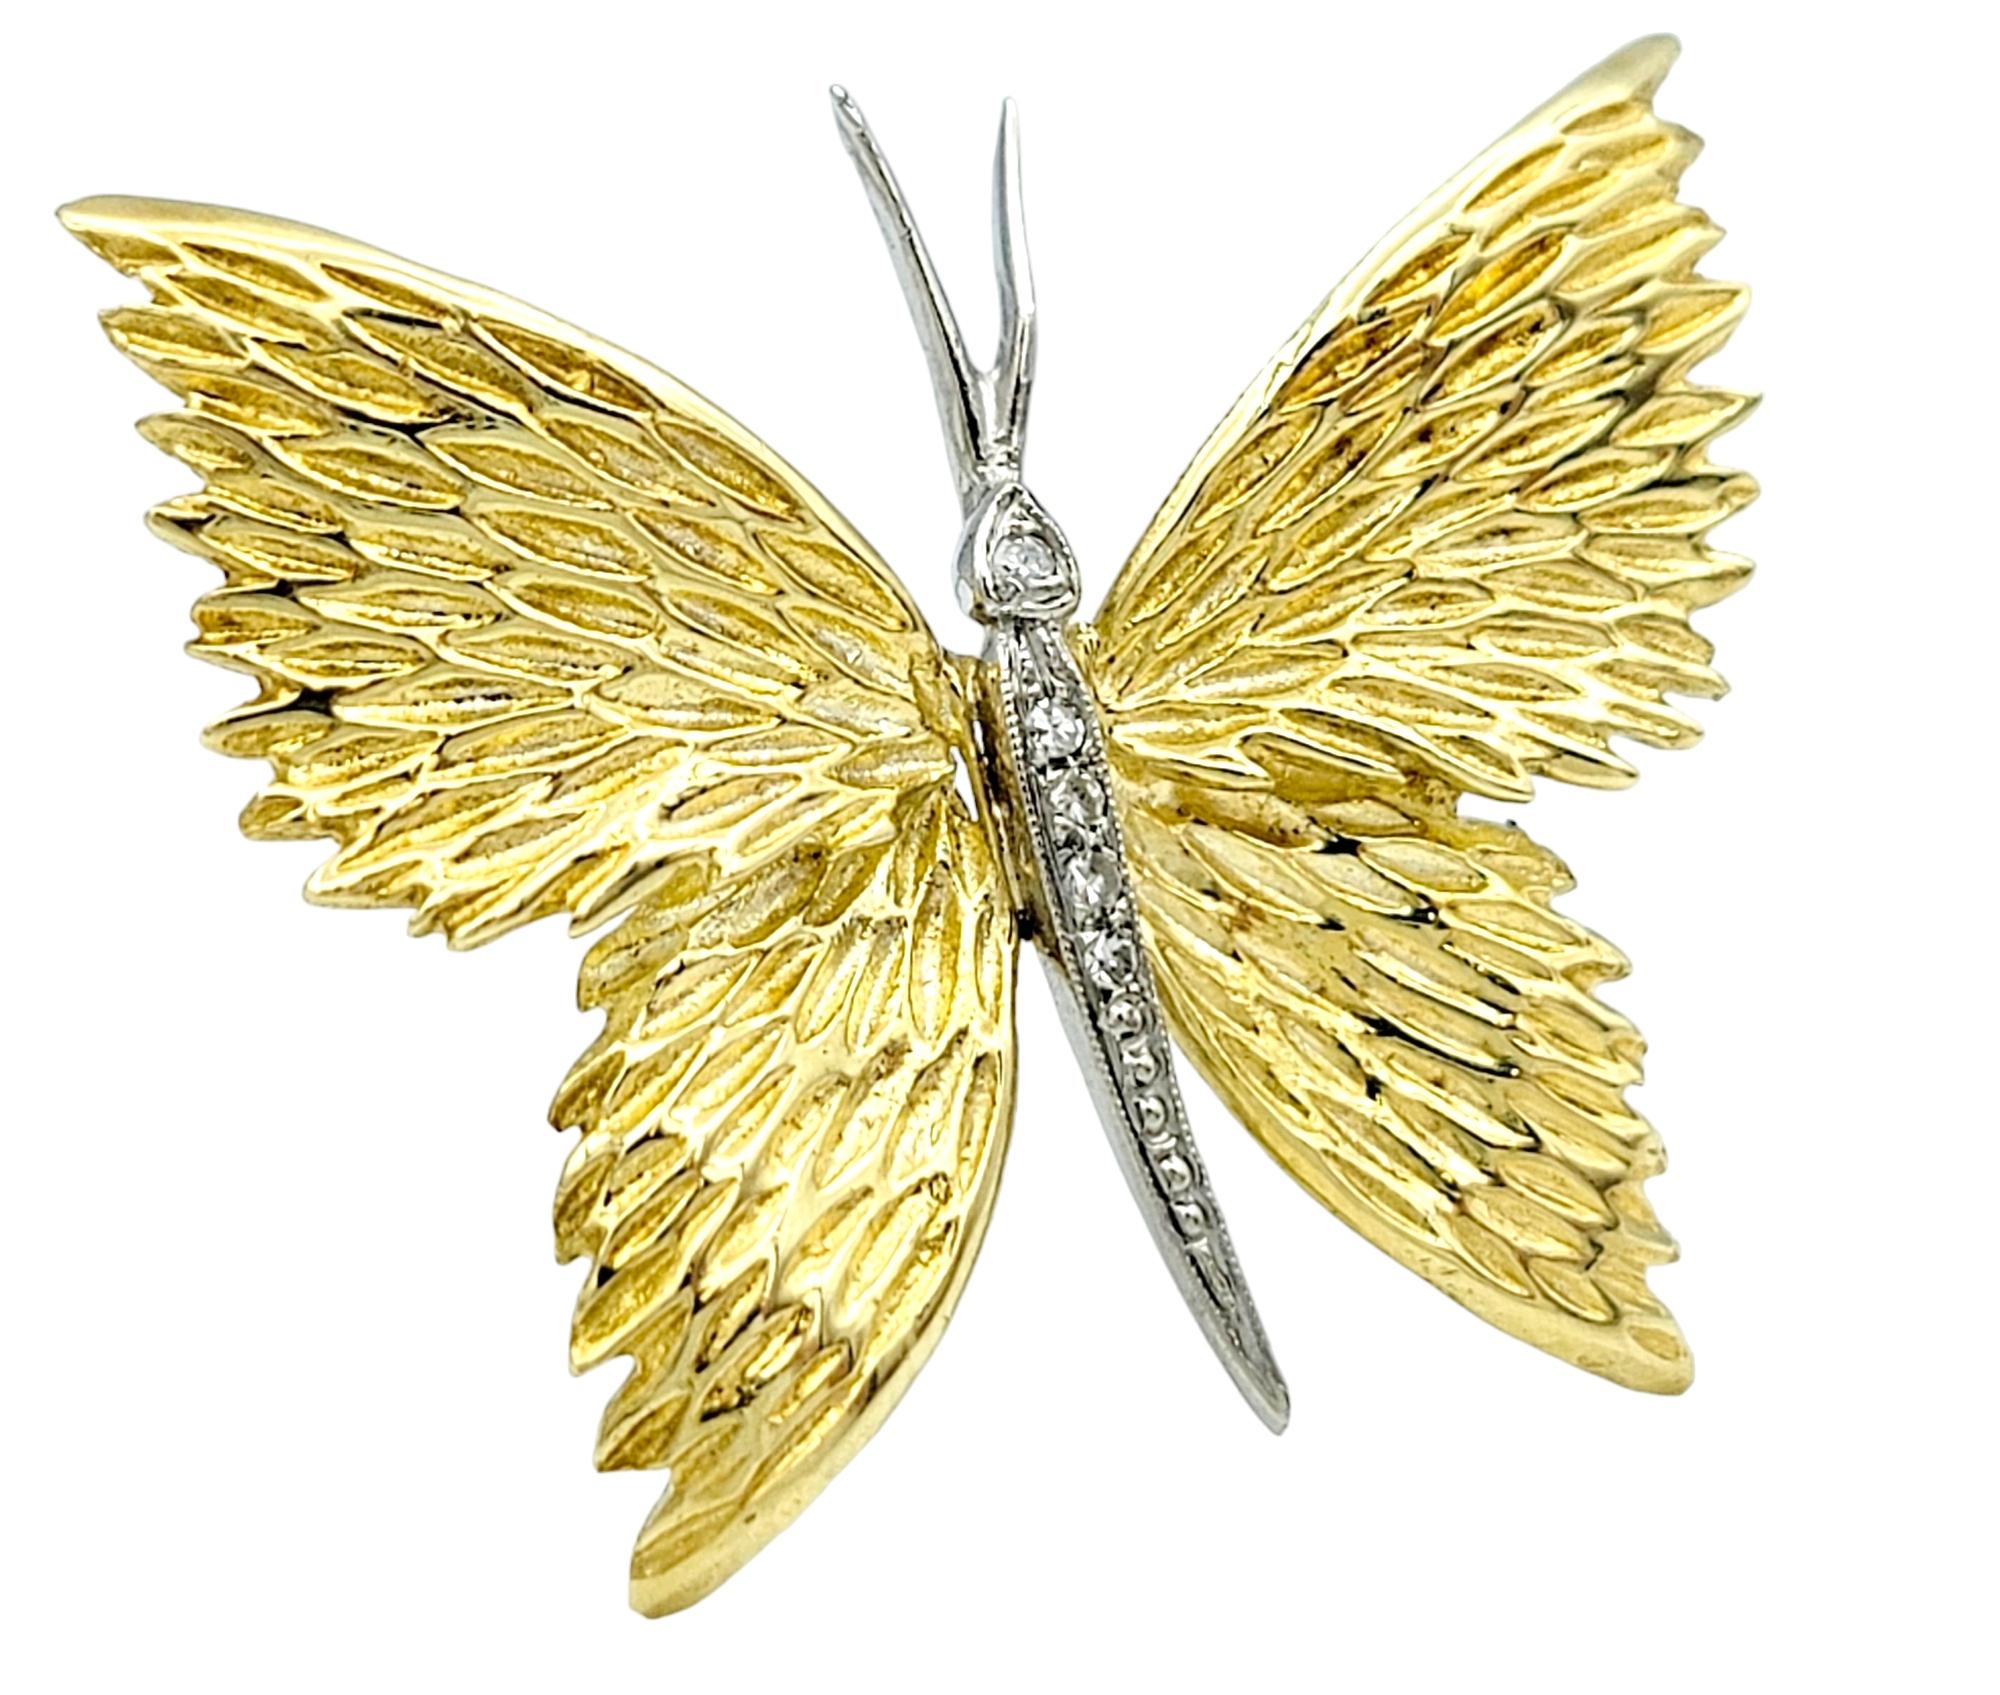 L'Elegance et la Nature convergent dans notre broche papillon exquise mais simple, sertie d'or 18 carats. La broche présente des ailes ornées de rainures texturées, créant un délicat jeu d'ombre et de lumière qui imite les motifs complexes des ailes